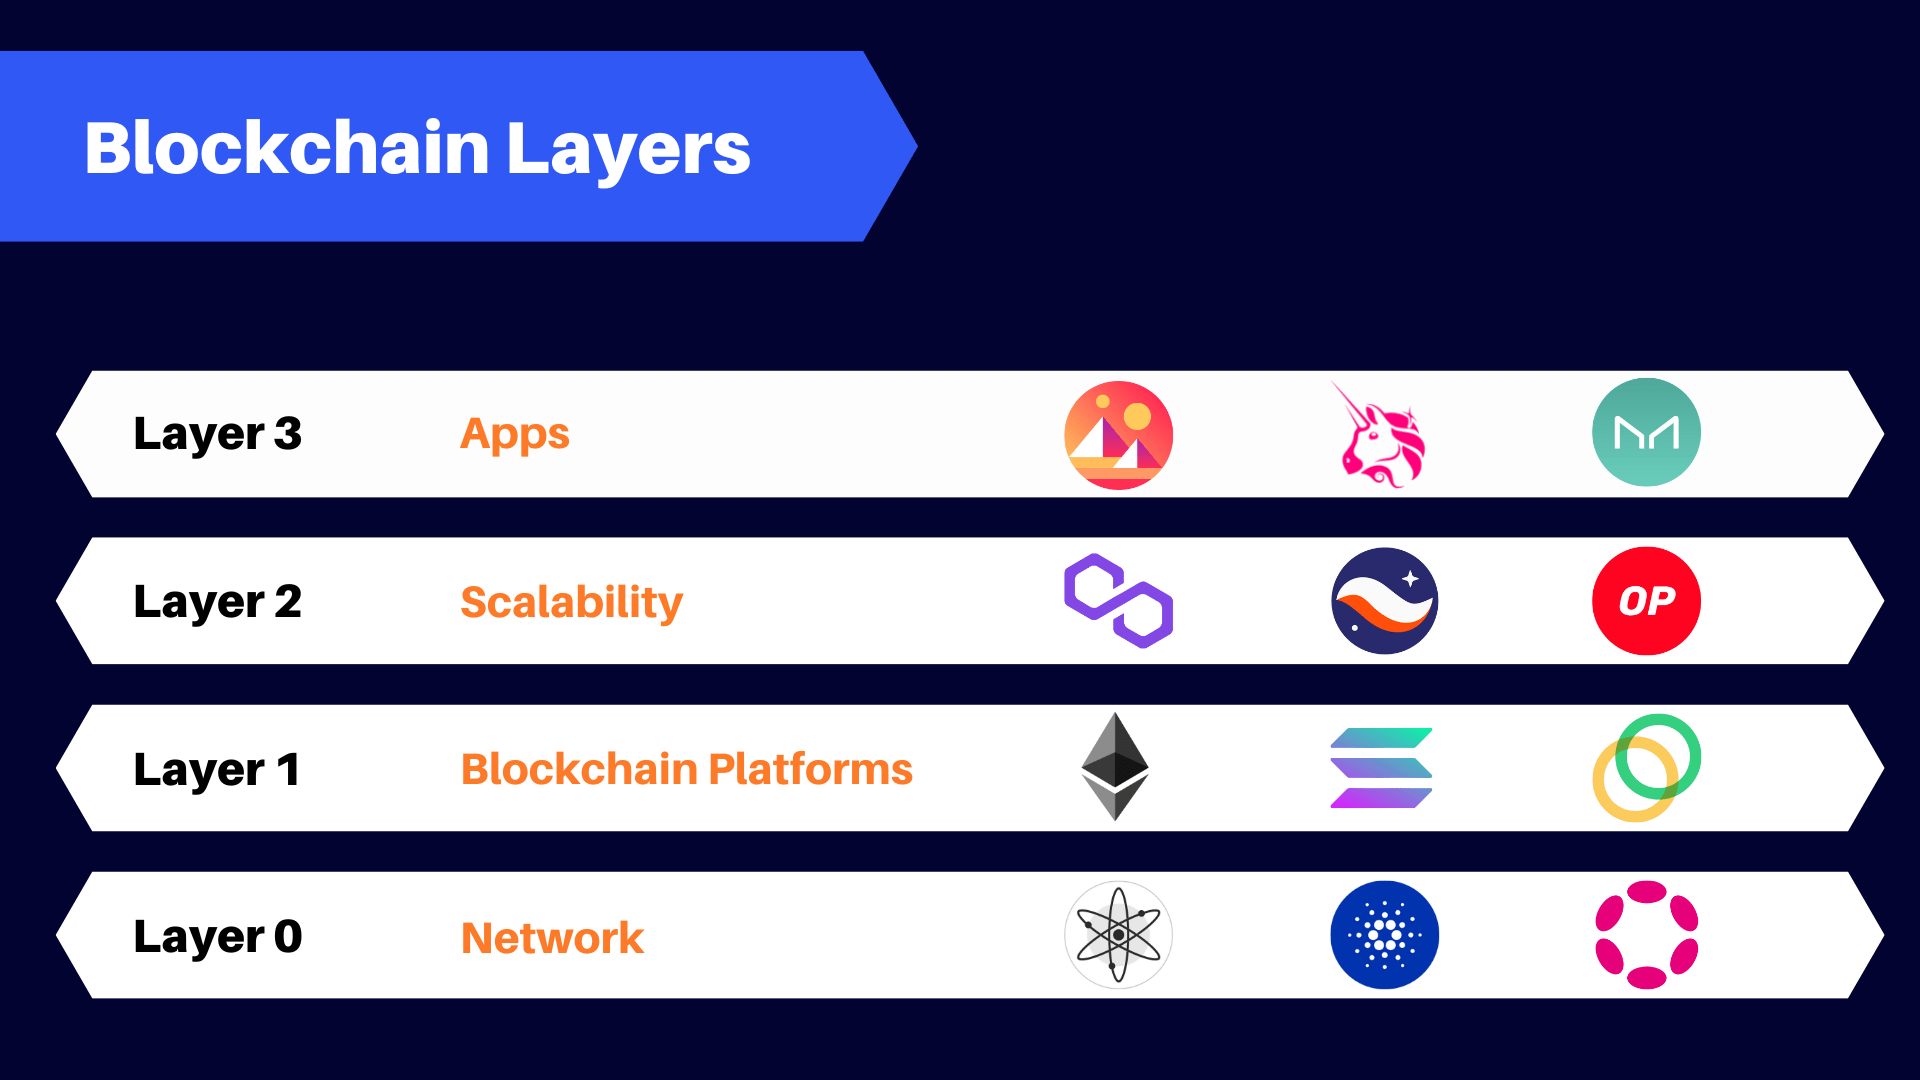 Blockchain Layers - Layer 0, Layer 1, Layer 2, Layer 3